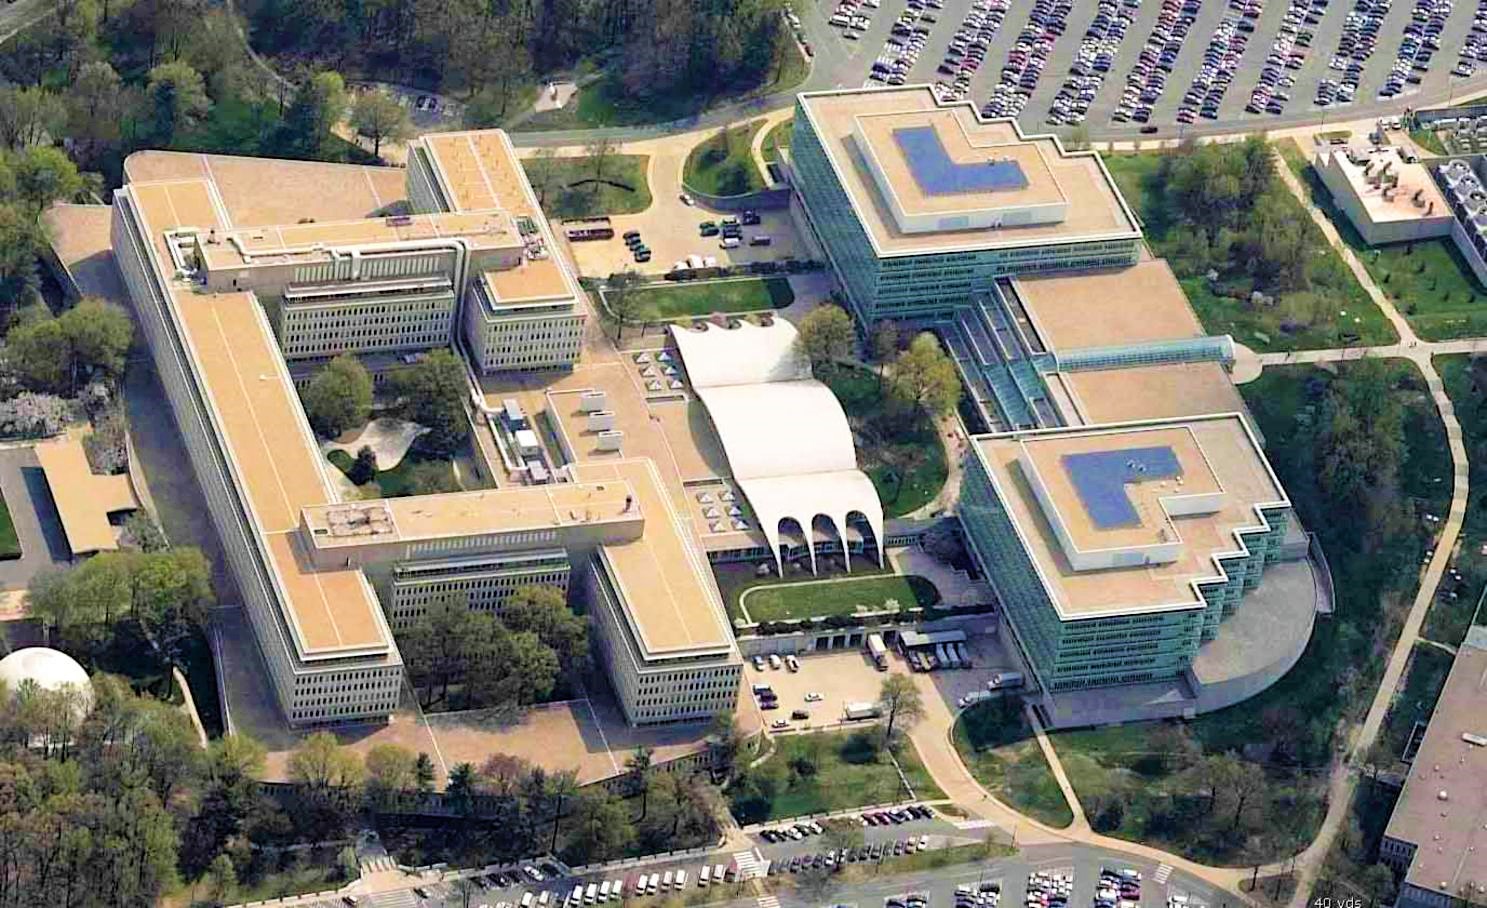 Лэнгли штаб квартира ЦРУ